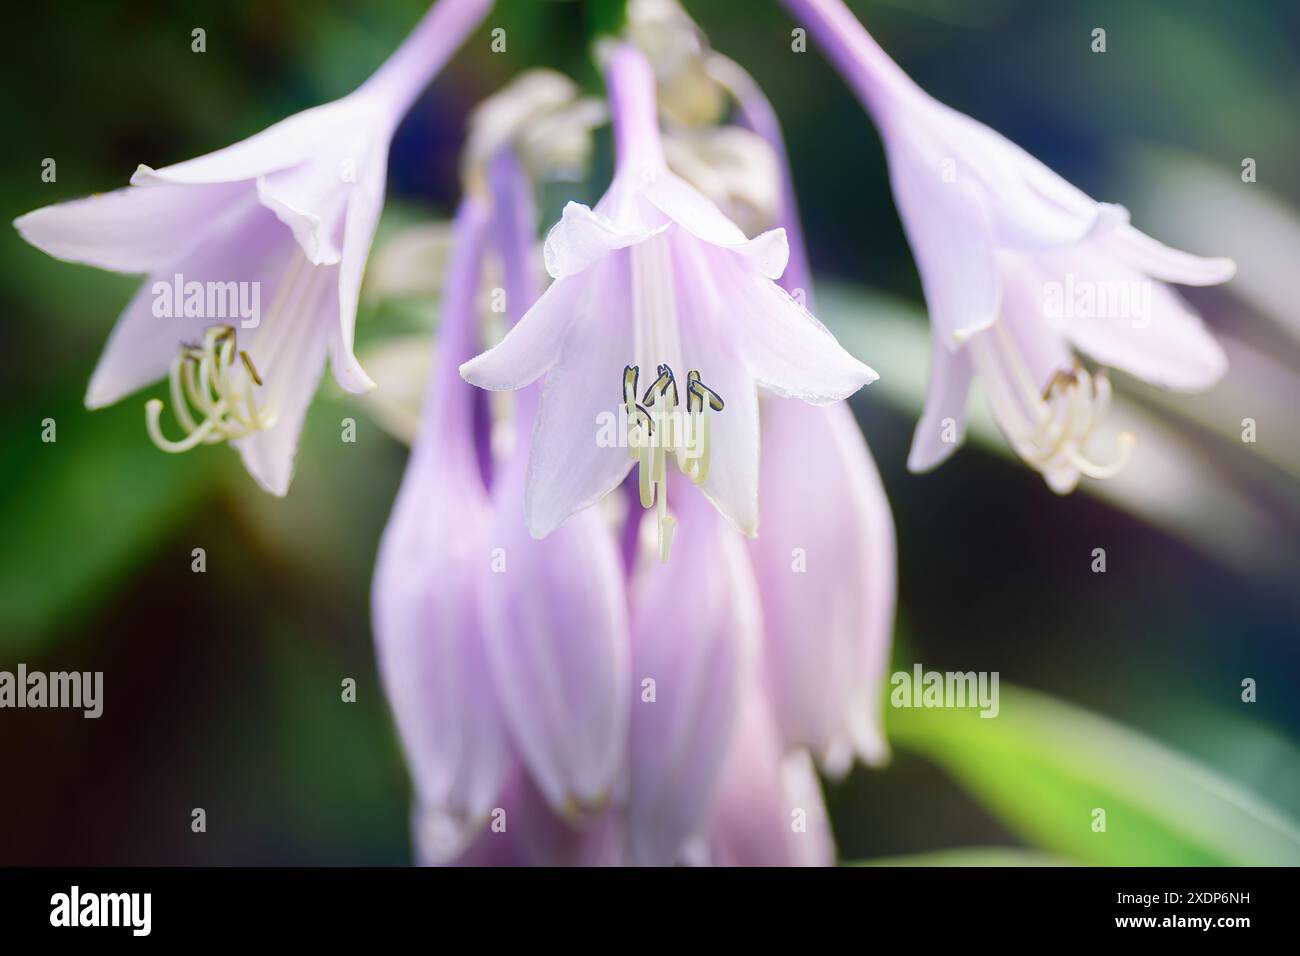 Hellviolette Blüte der krautigen Staudenpflanze Hosta. Romantische Nahaufnahme einer Zierlaubspflanze. Stockfoto